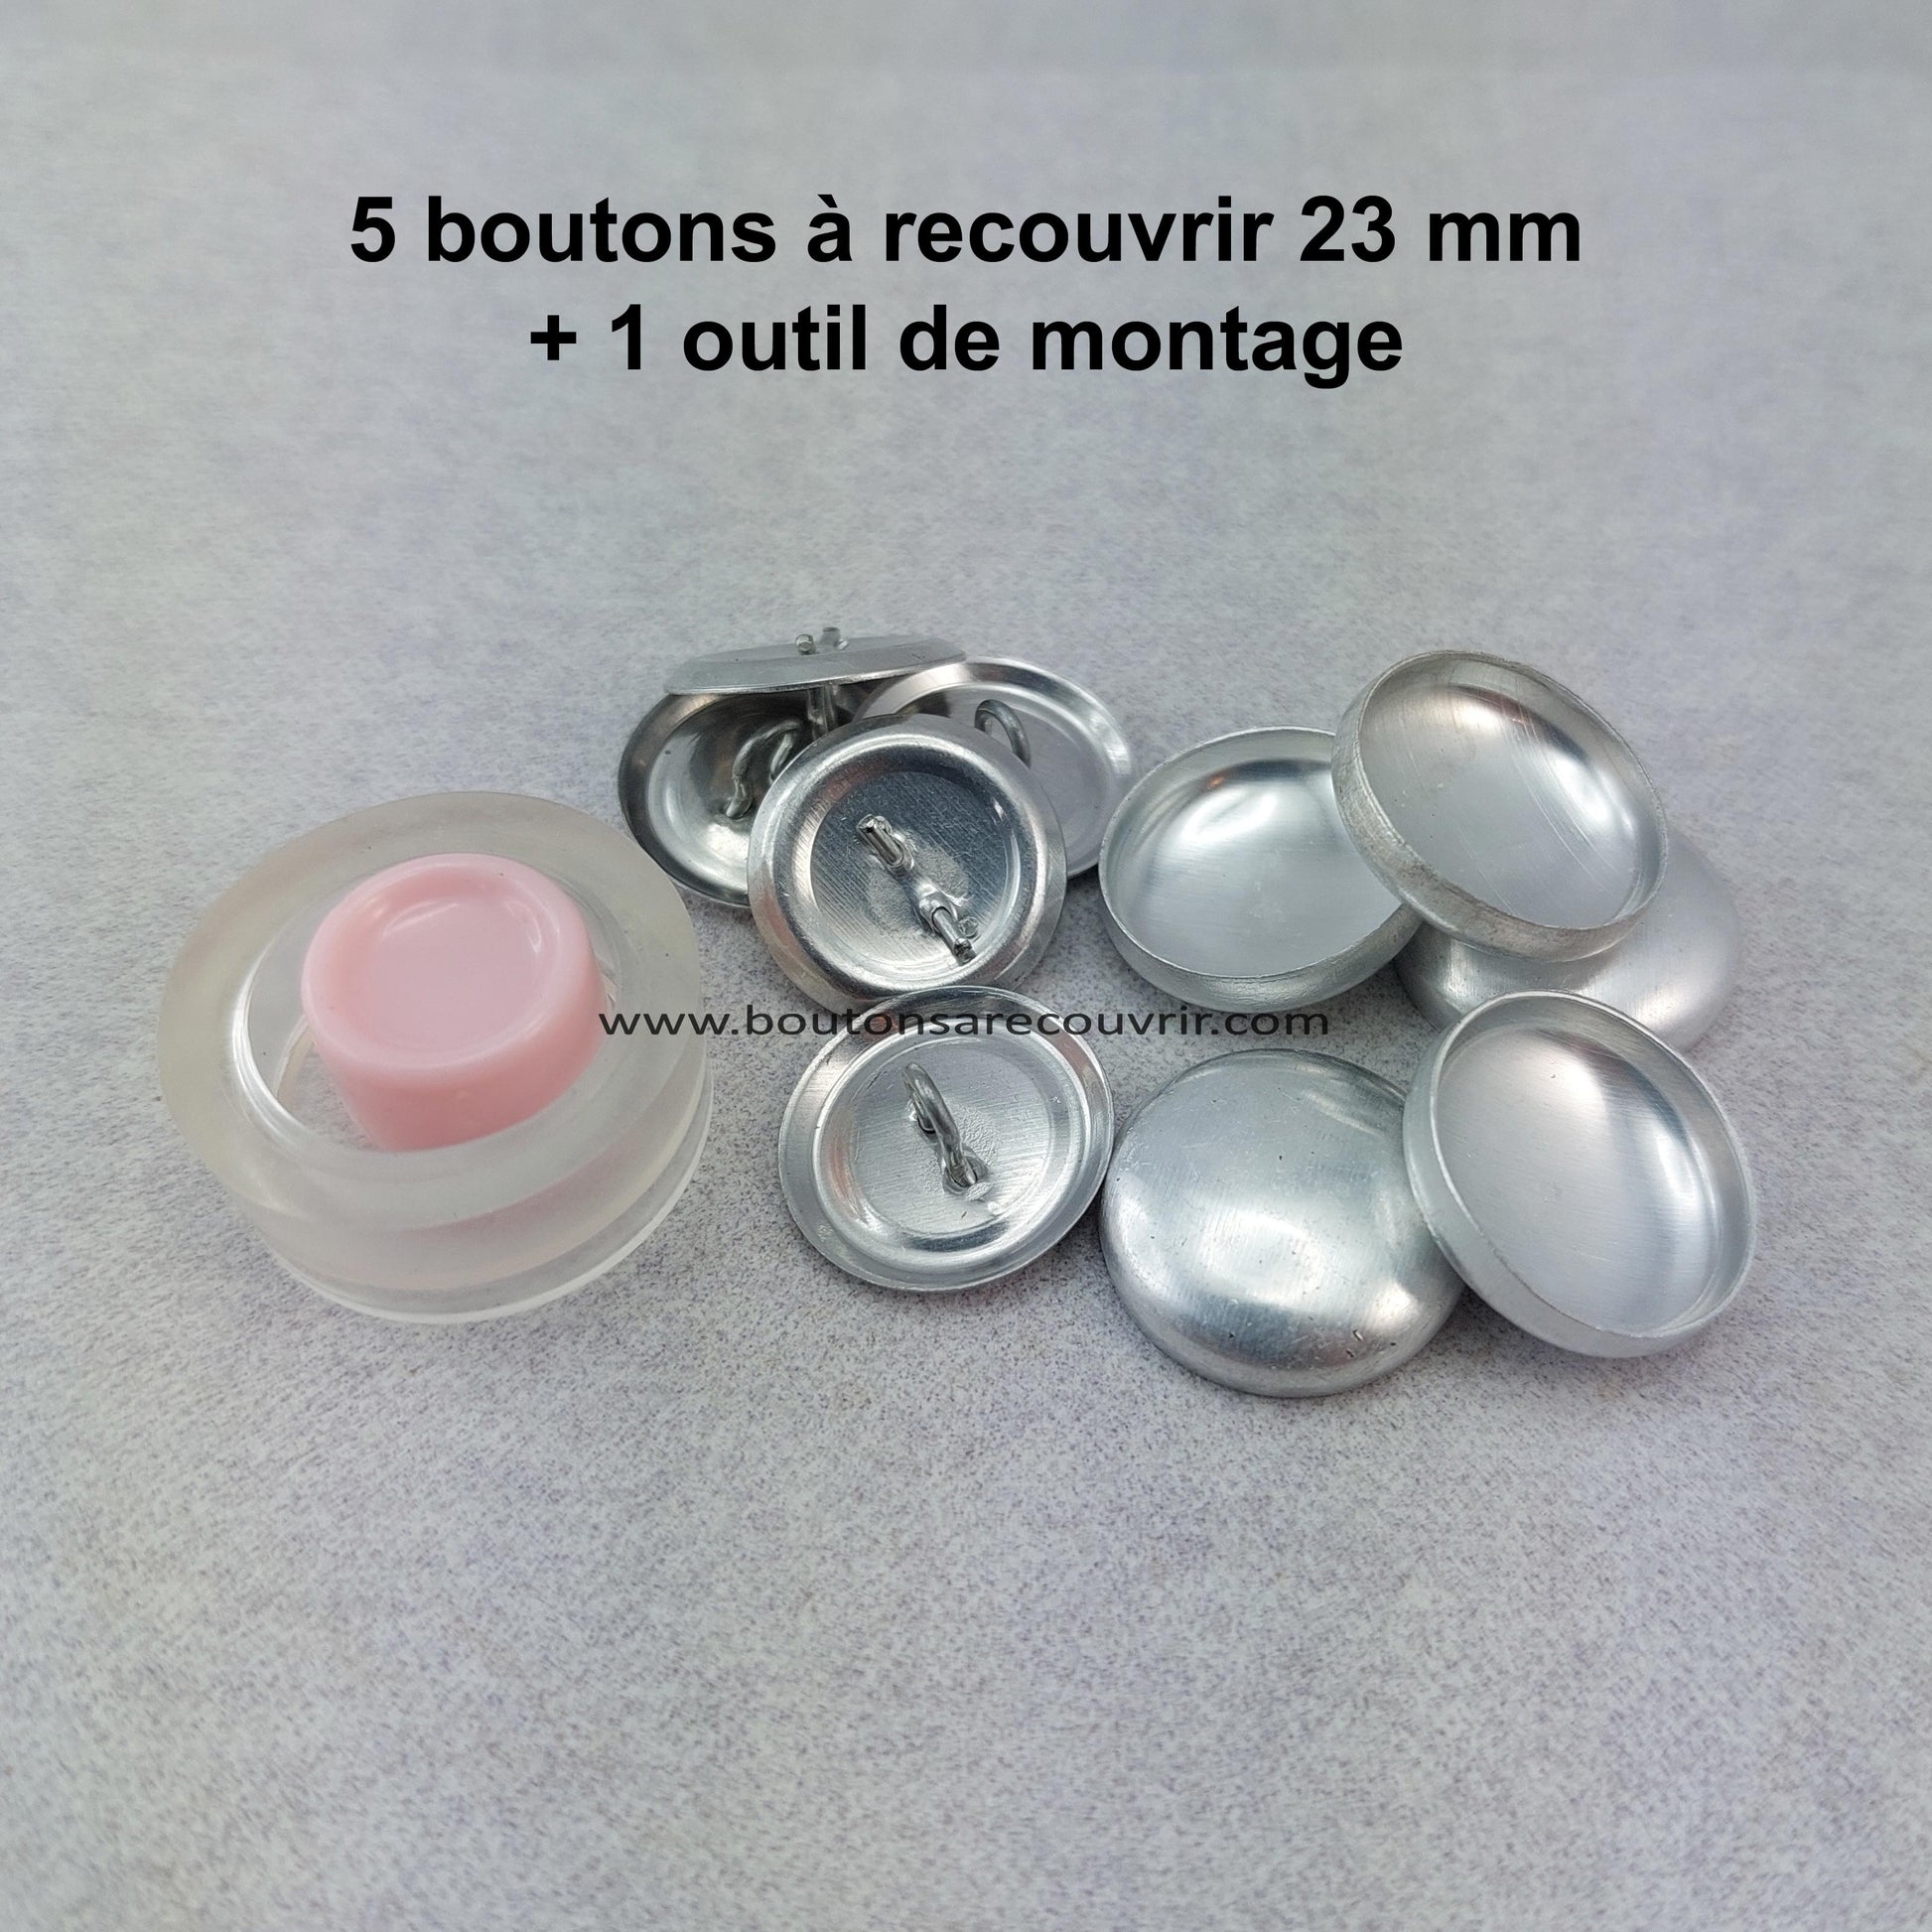 5 boutons à recouvrir 23 mm avec outil de montage